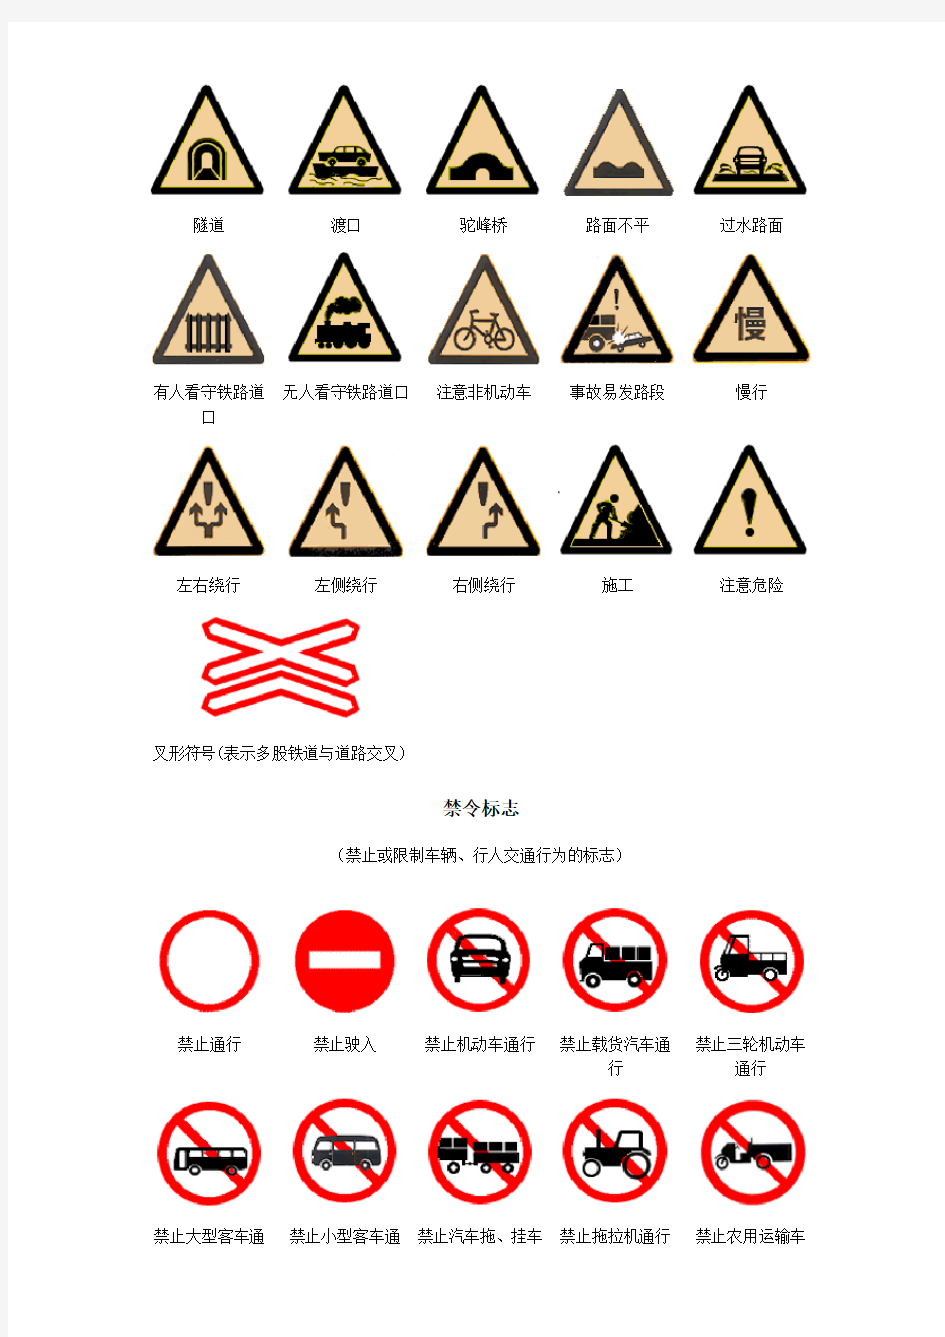 中国交通标志大全——超详细_易懂